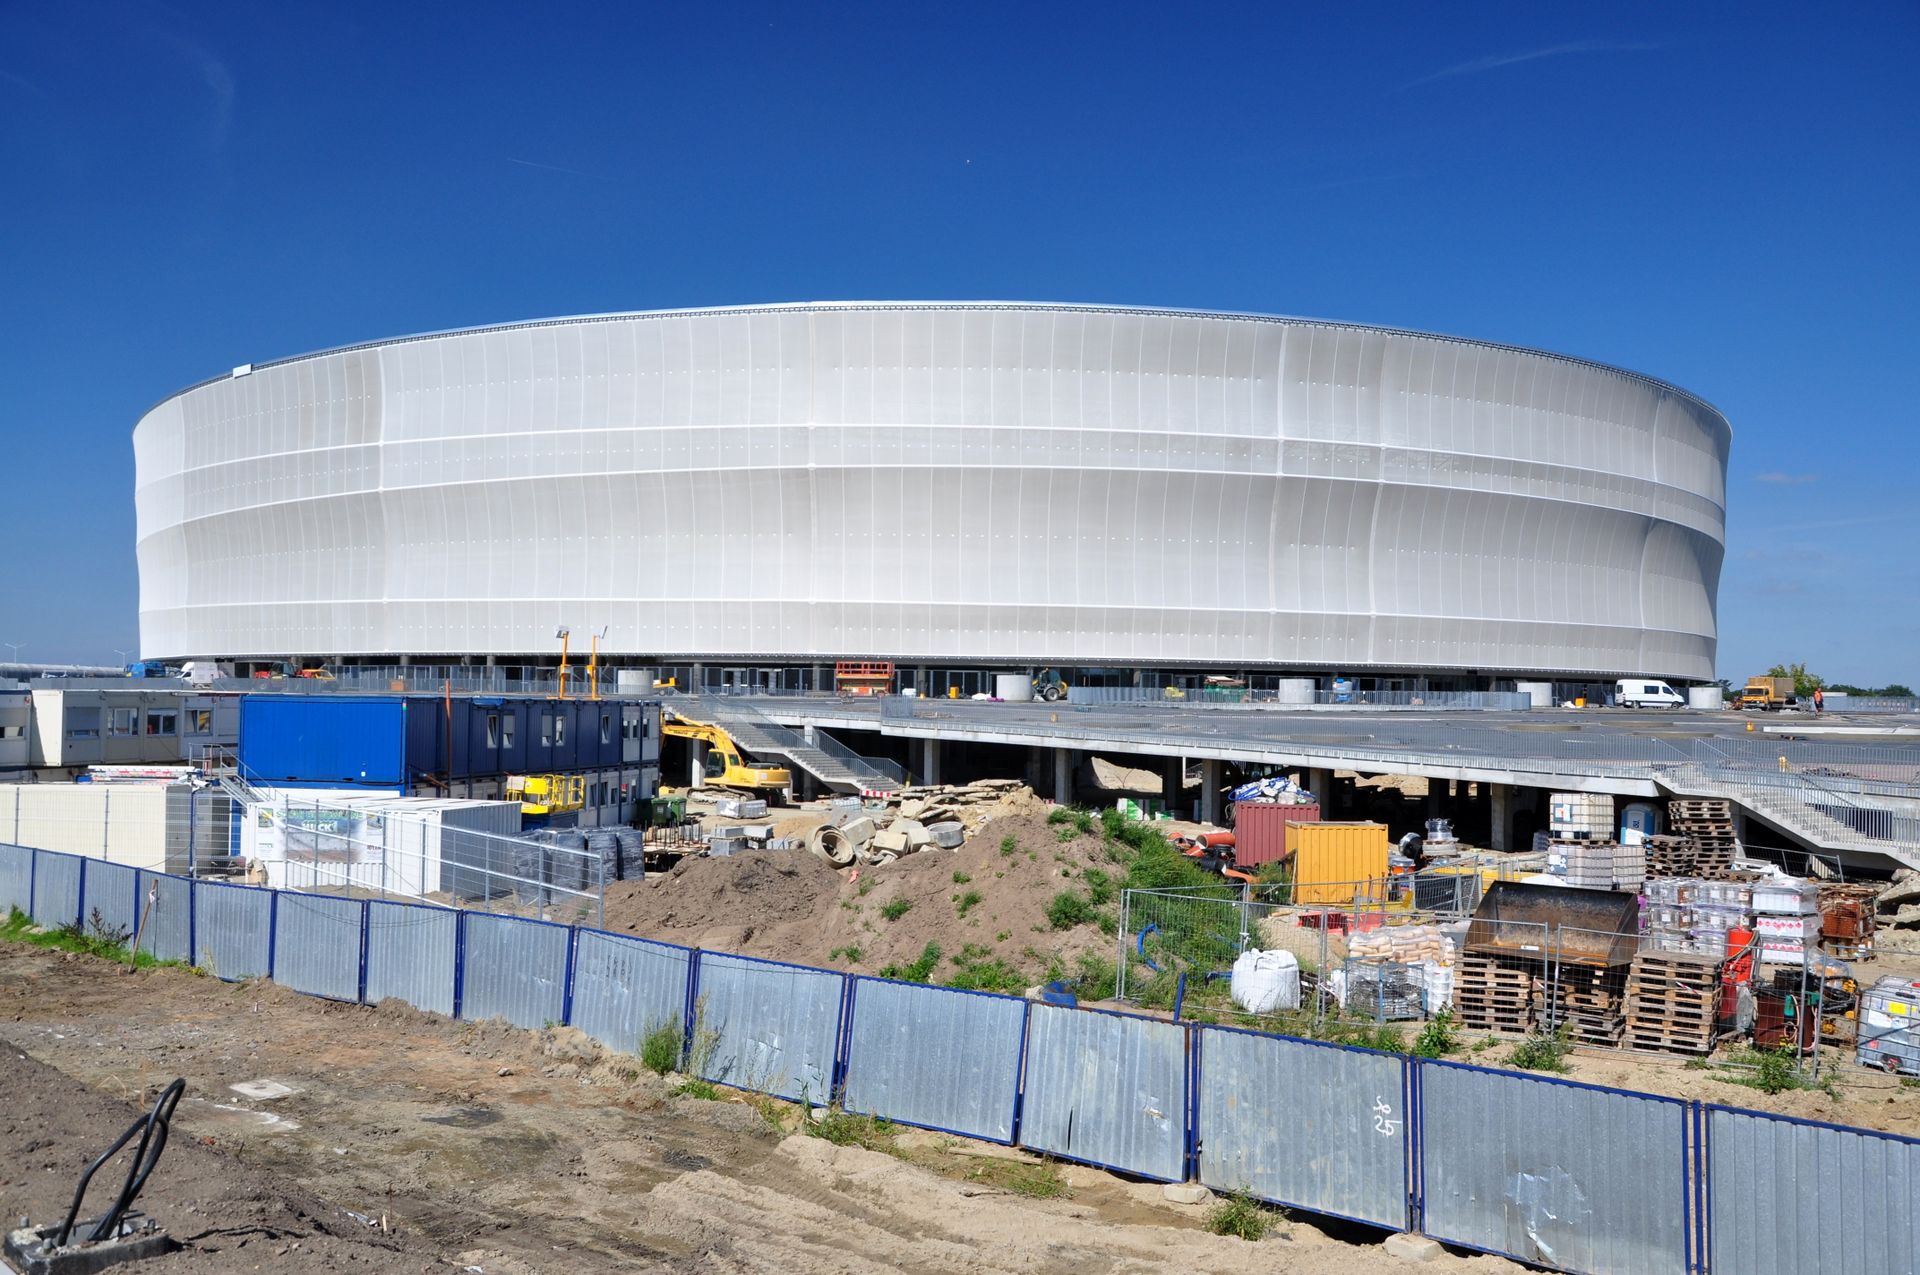  Budowa stadionu przy al. Śląskiej pod lupą Komisji Europejskiej